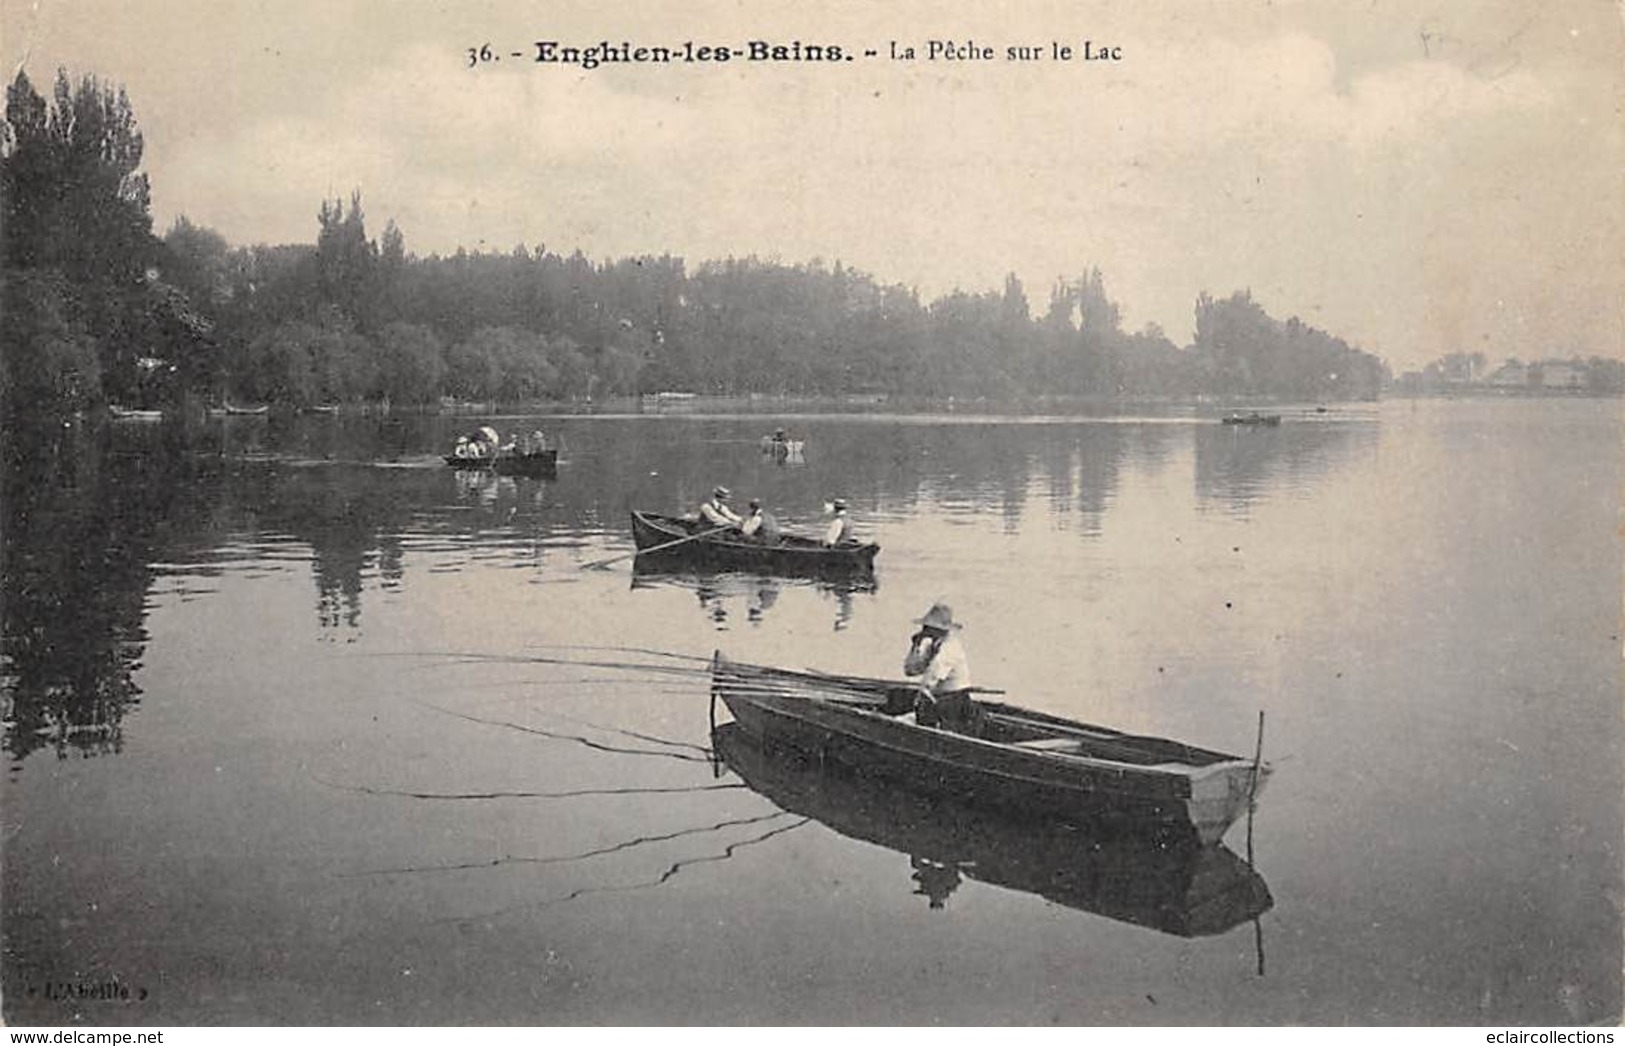 Thème.  Métier.   Pêche A La Ligne :   95   Enghien Les Bains      (Voir Scan) - Fishing